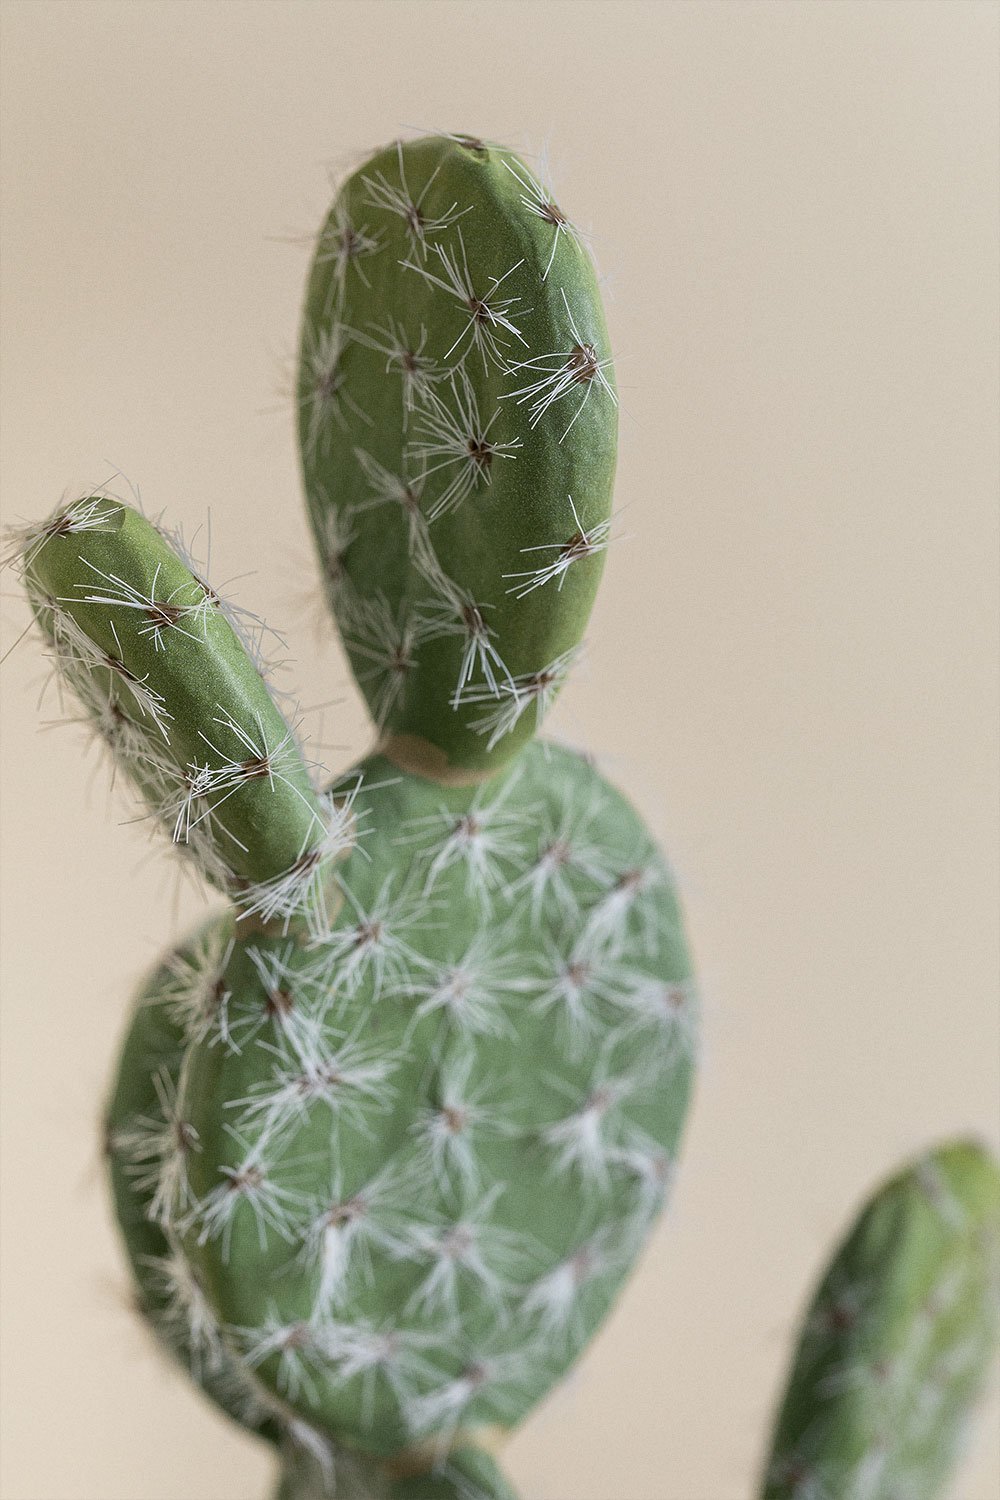 SKLUM Künstlicher Kaktus mit Blumen Cereus 52 cm ↑52 cm